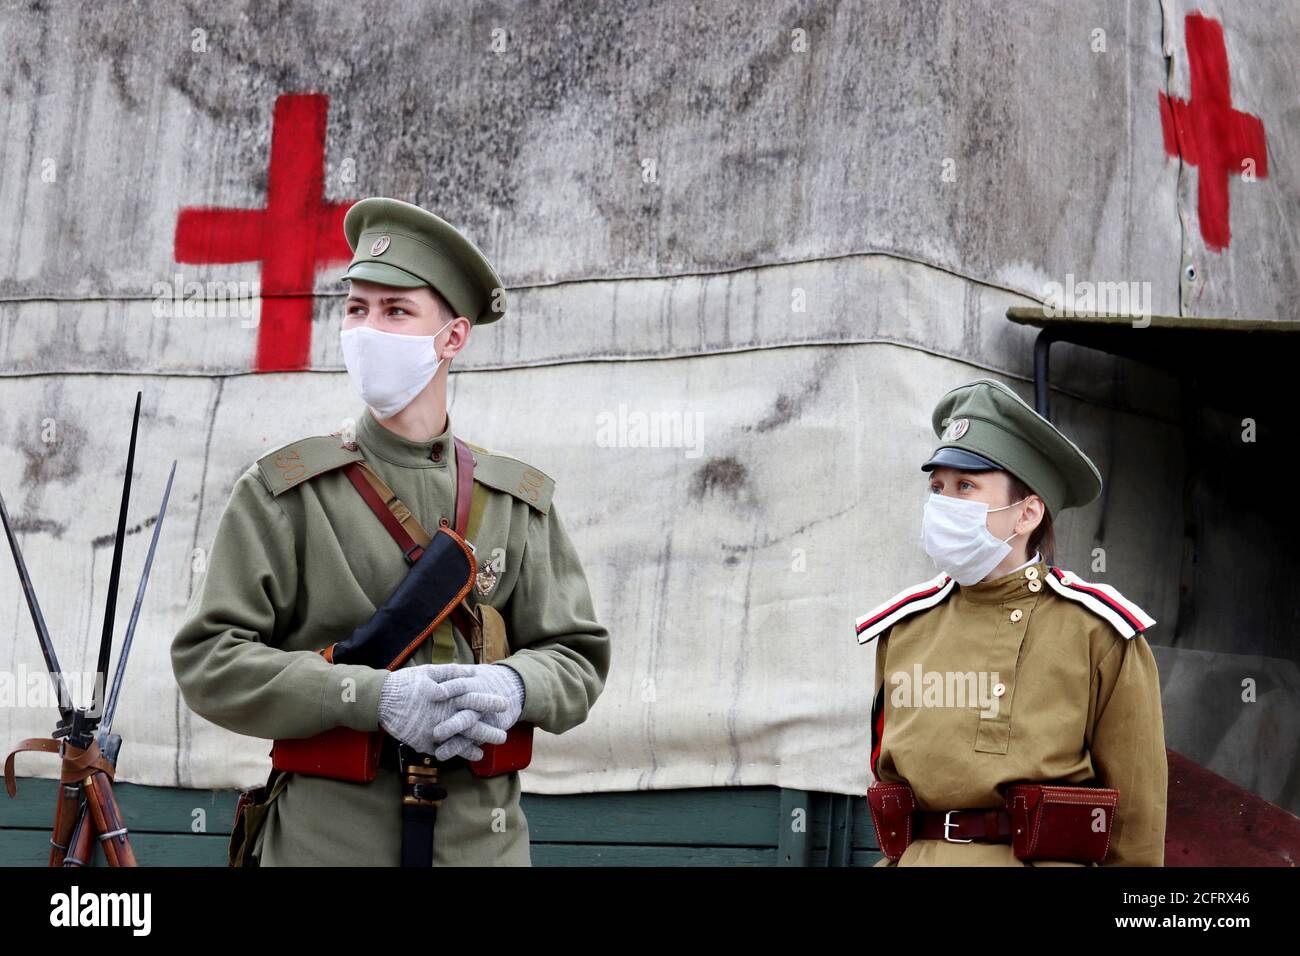 Soldats de l'Empire russe du début du XXe siècle dans masque l'hôpital militaire de campagne pendant le jour de la ville de Moscou. Reconstruction historique Banque D'Images